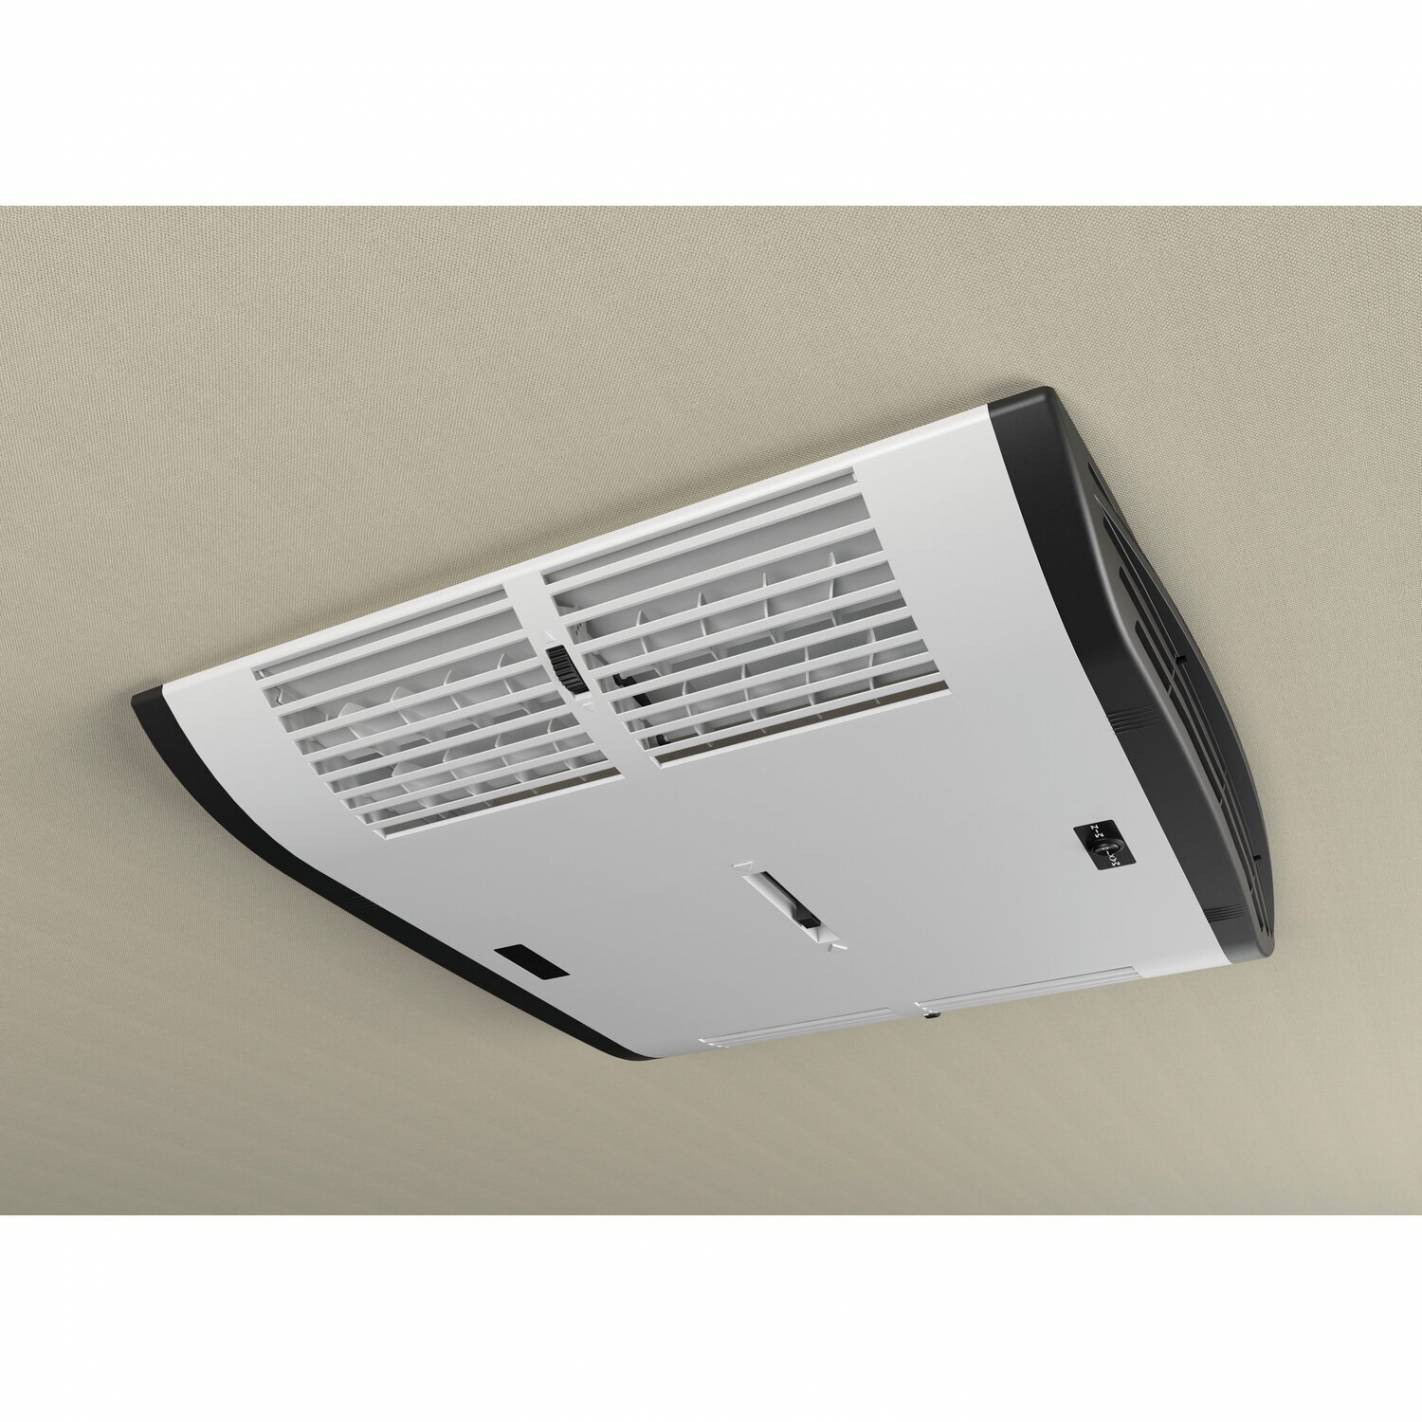 Klimaanlage Plein-Aircon 12V für Kastenwagen - Just4Camper Indel